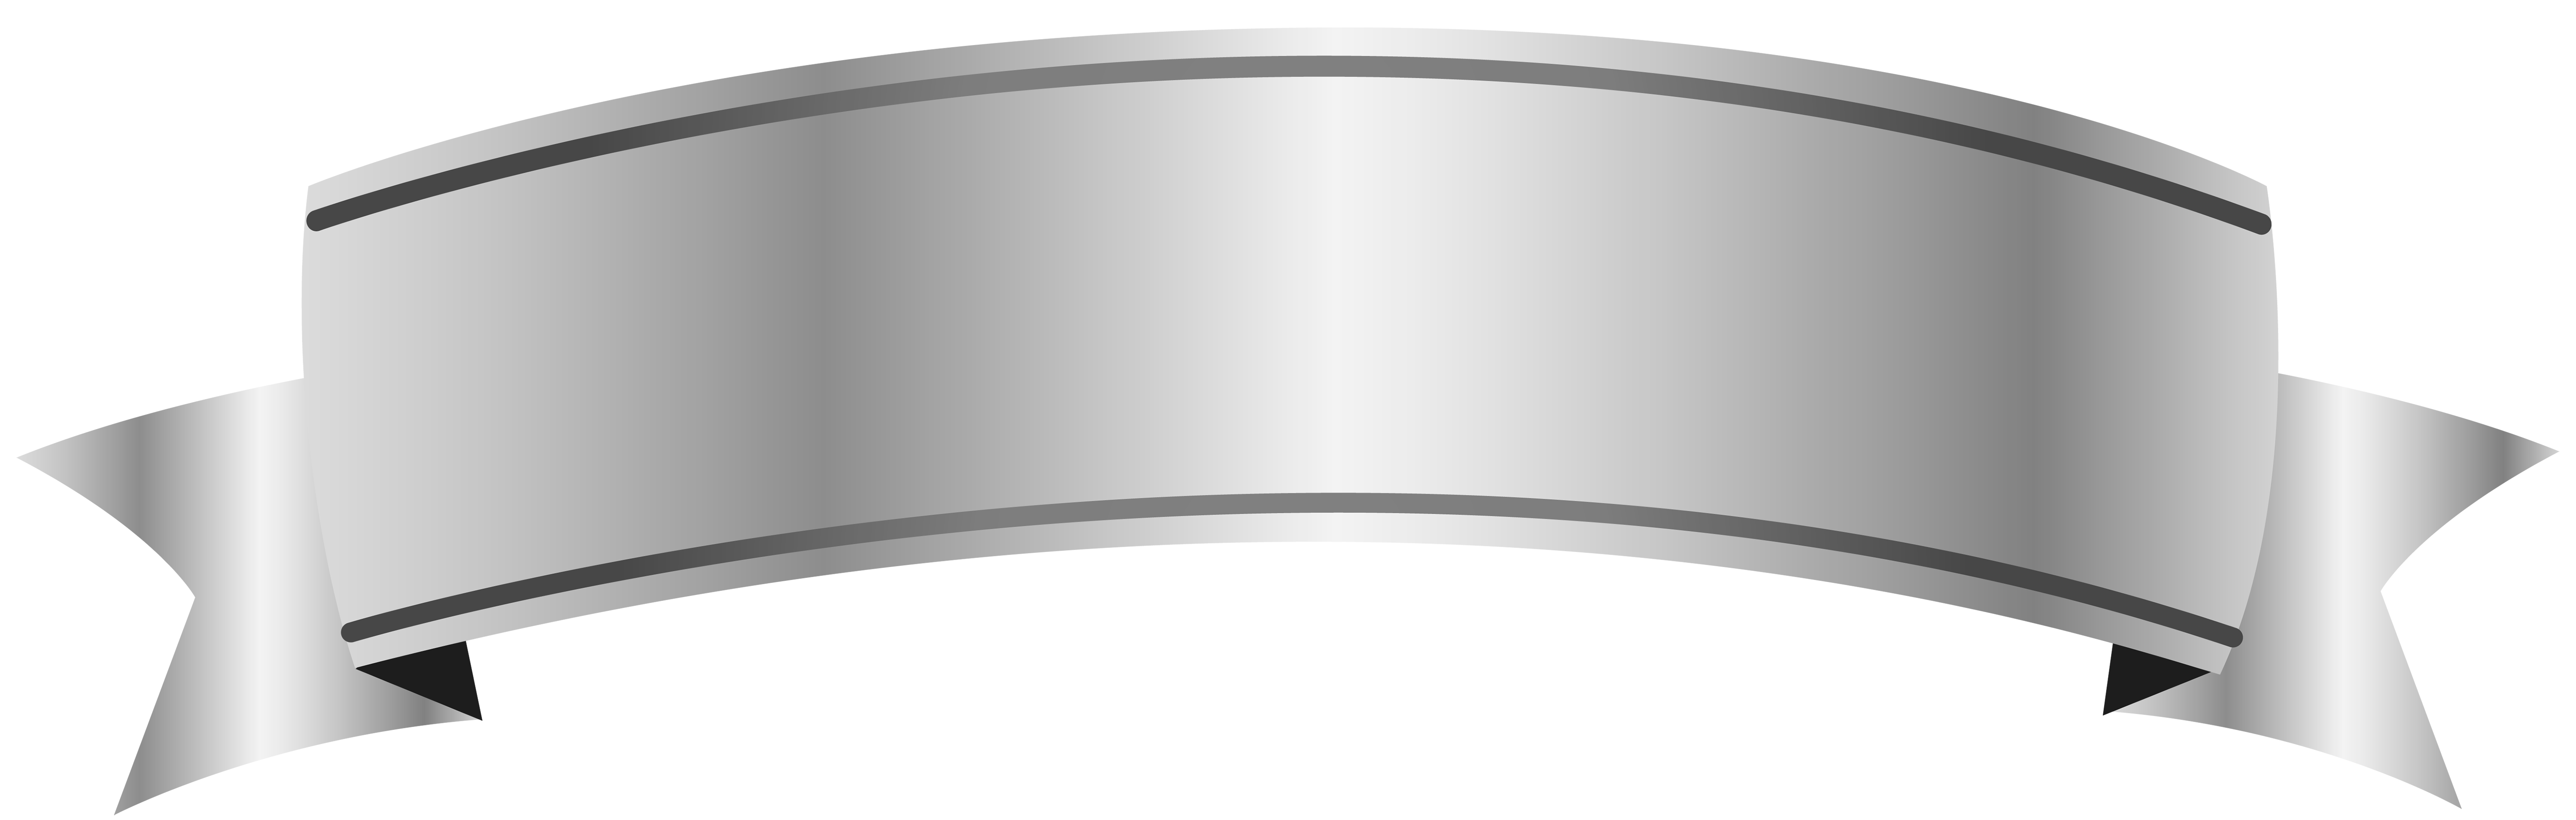 Silver Banner